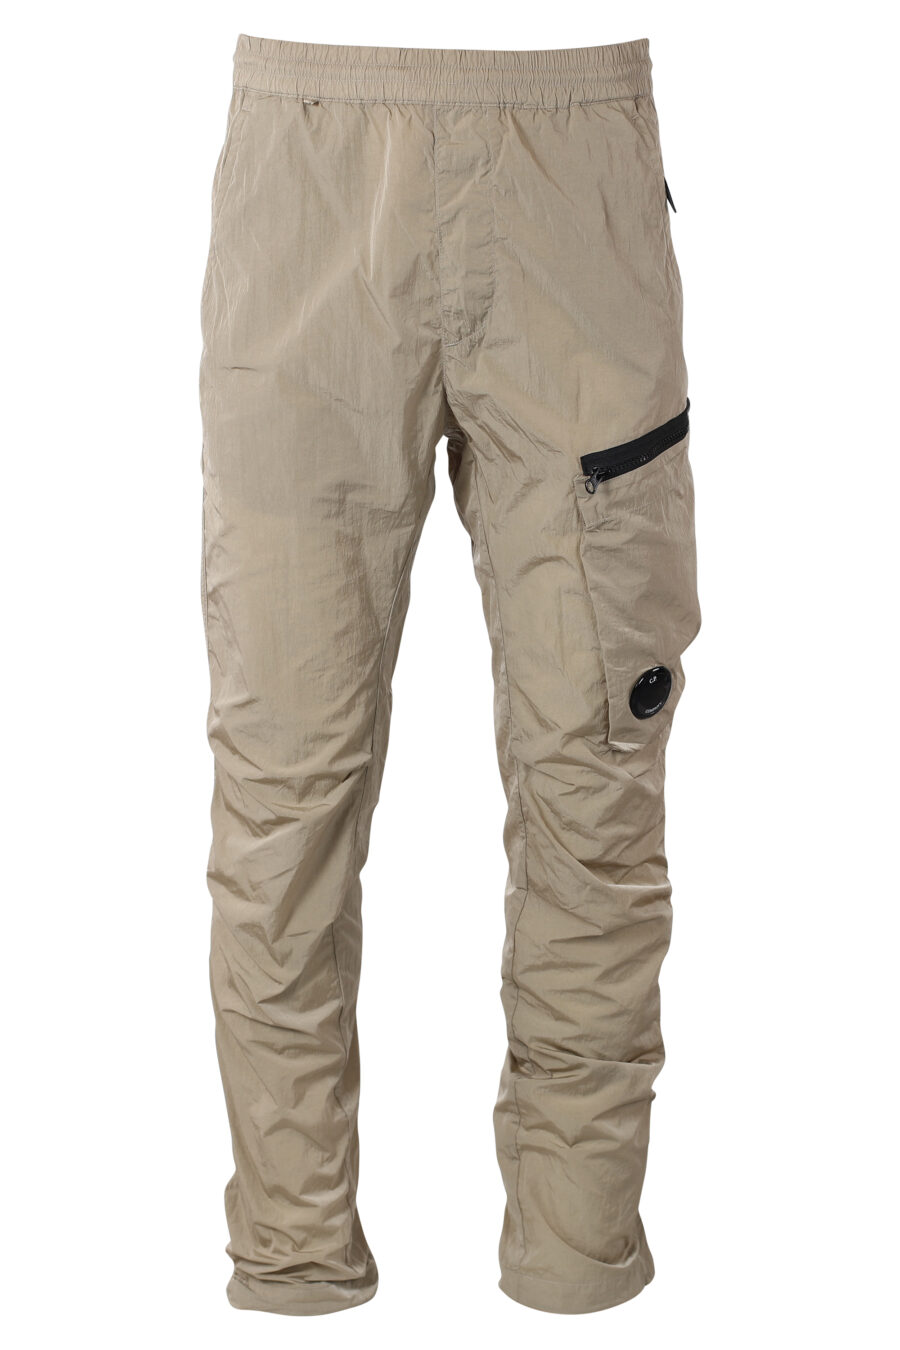 Pantalón beige con bolsillo lateral diagonal y minilogo circular - IMG 9936